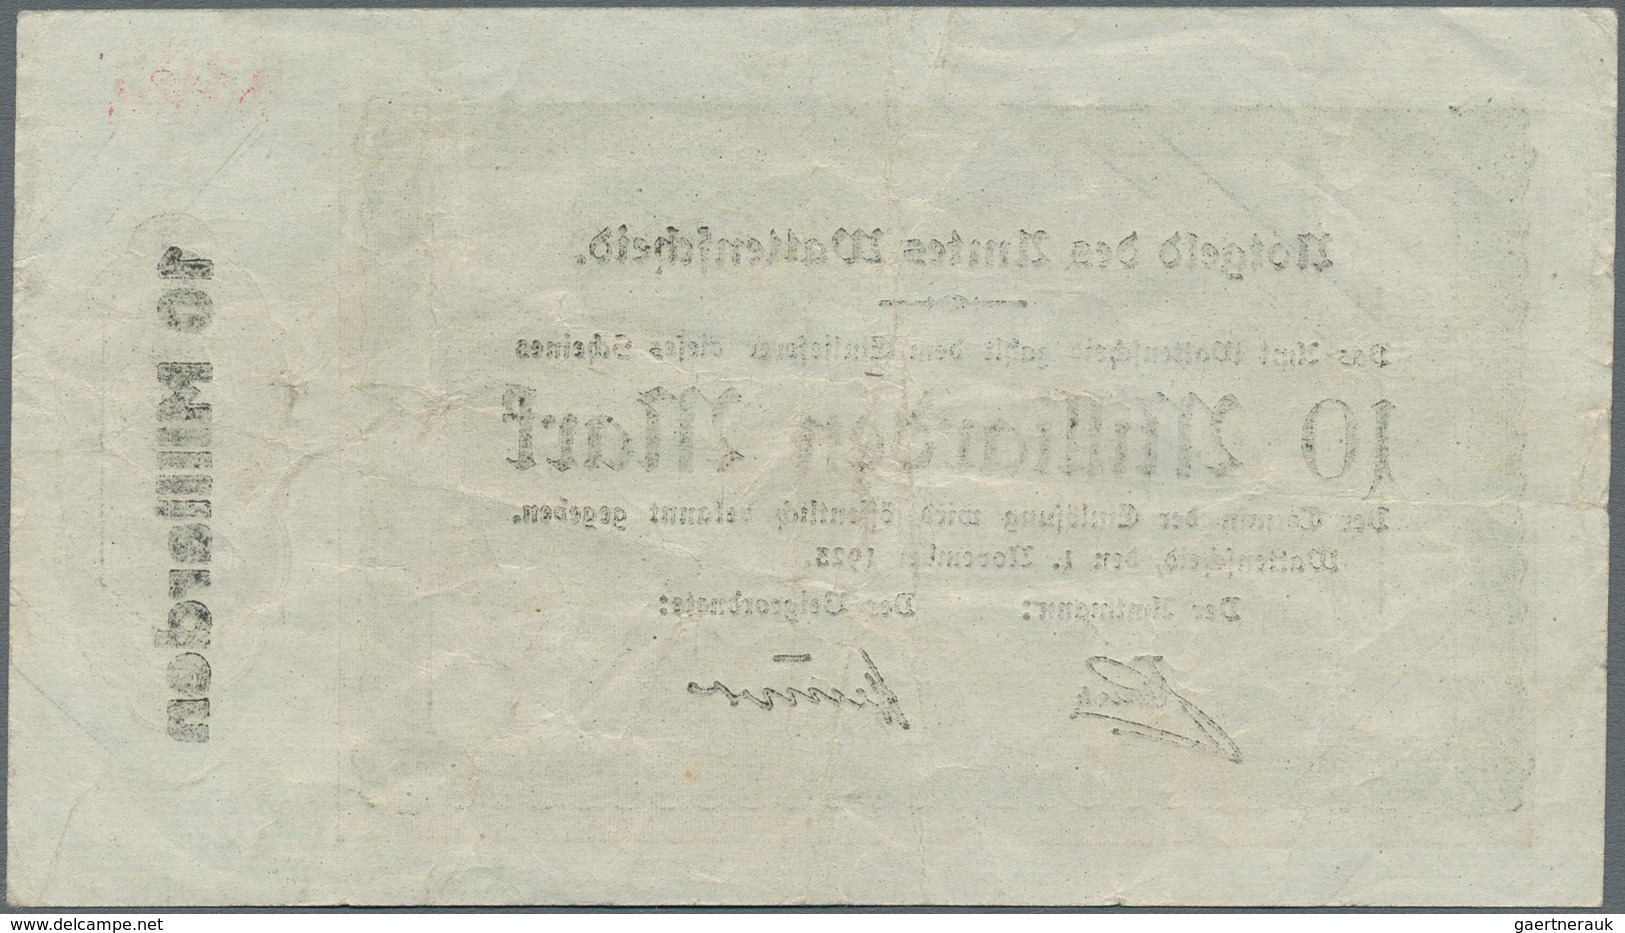 Deutschland - Notgeld - Westfalen: Wattenscheid, Amt, 10 Mrd. Mark, 1.11.1923, Erh. III, Von Großer - Other & Unclassified